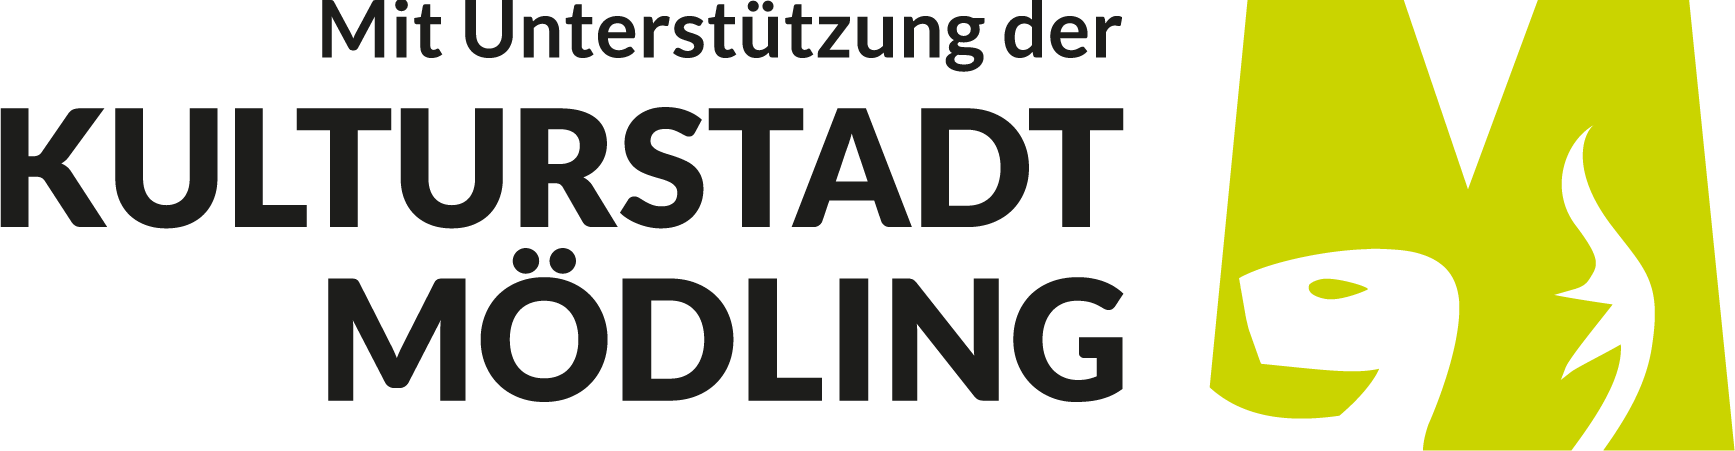 Gemeinde Mödling, Kultur